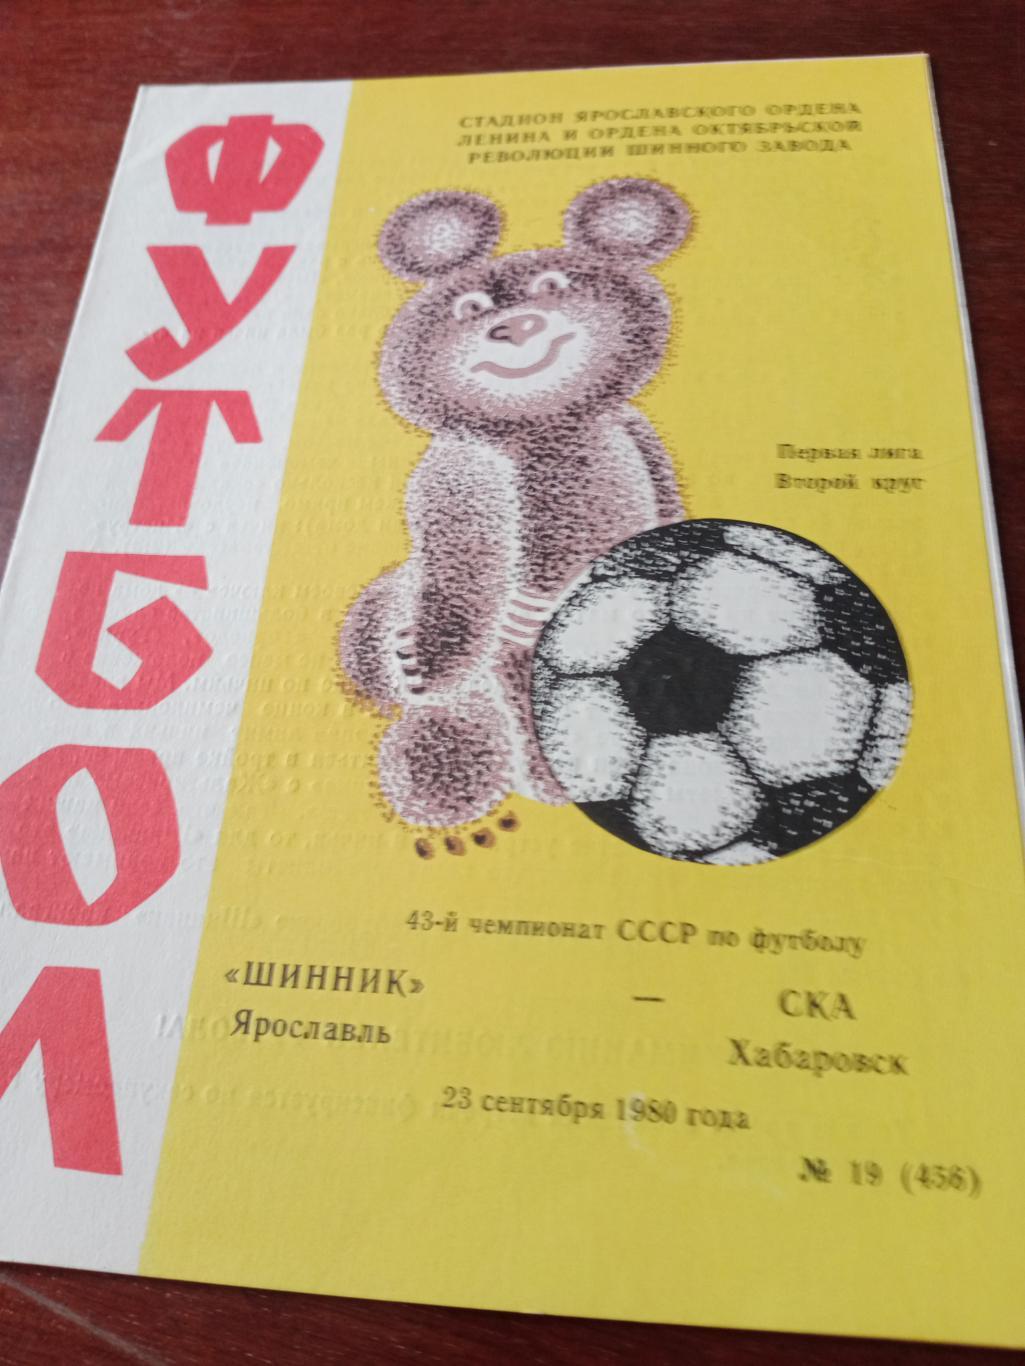 Шинник Ярославль - СКА Хабаровск. 23 сентября 1980 год